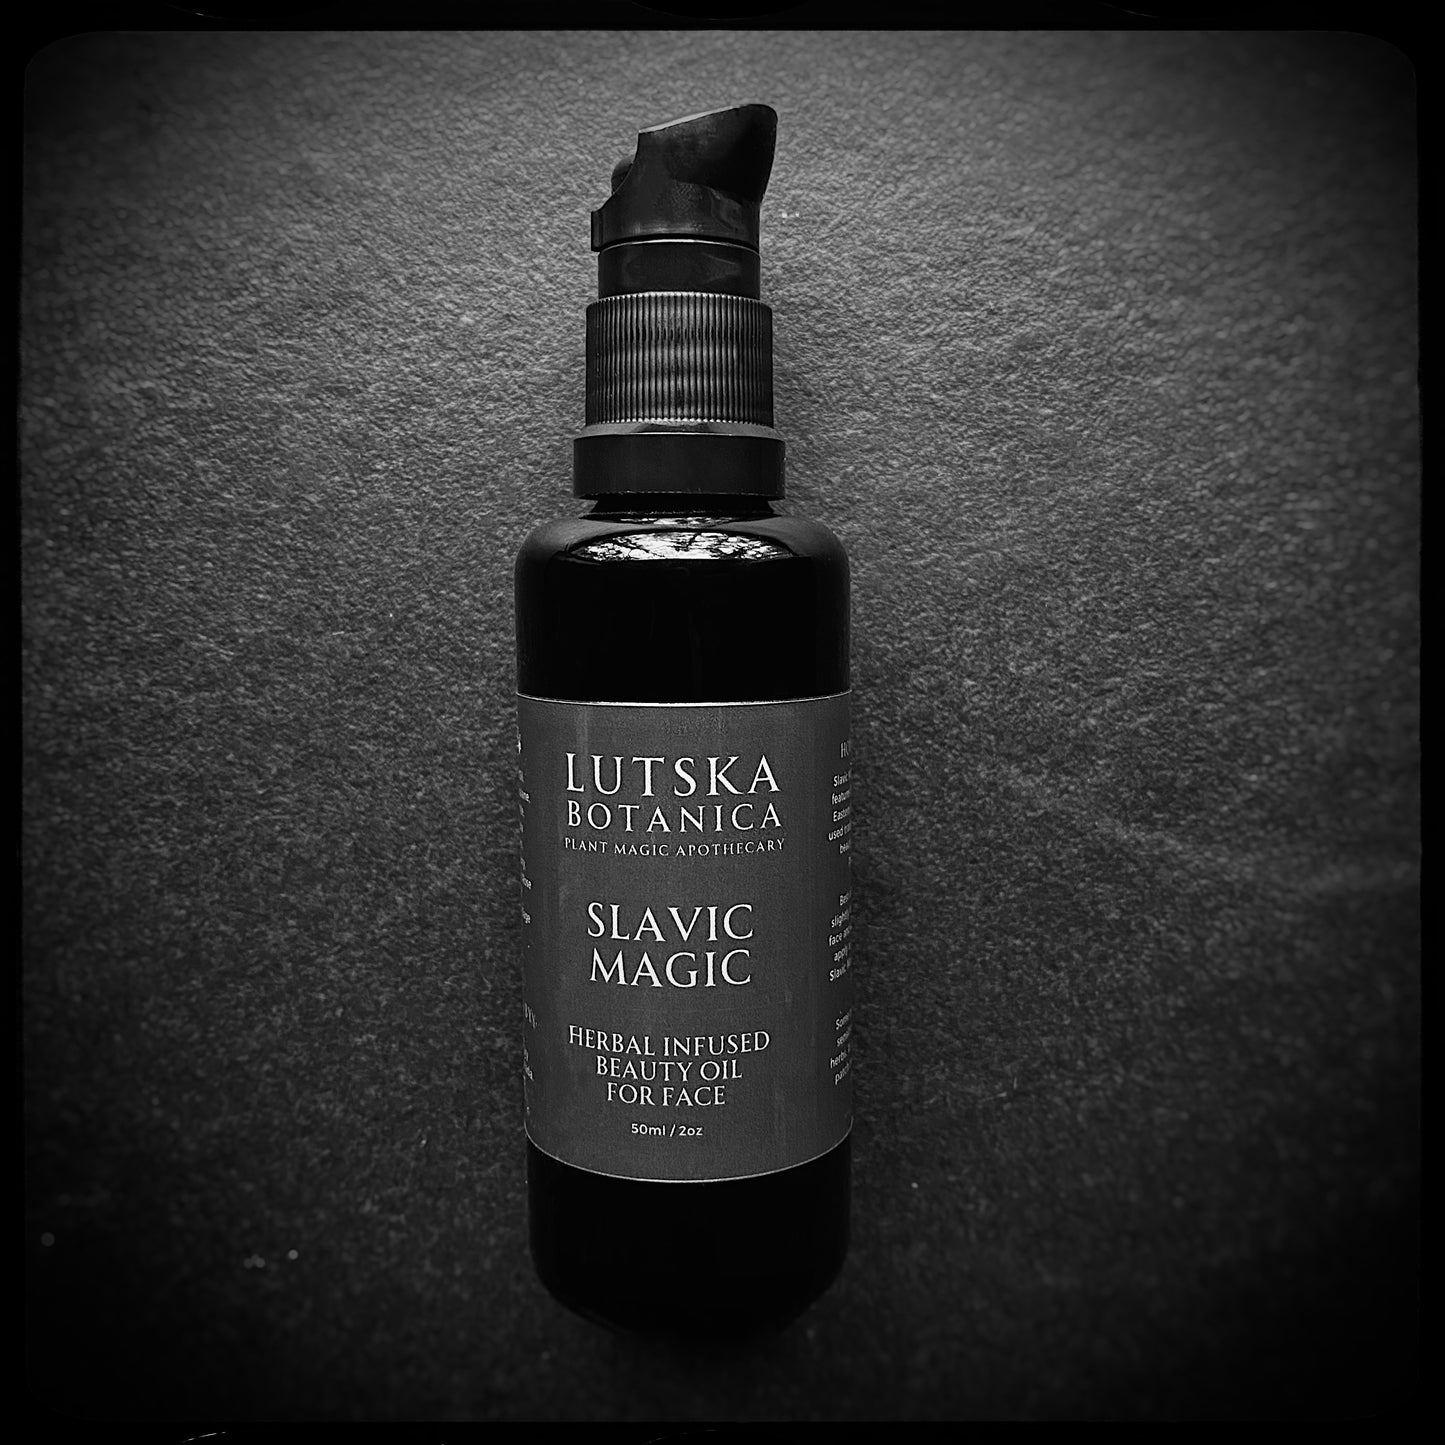 SLAVIC MAGIC™ - Herbal Infused Facial Oil - Calendula, Yarrow, Elderflower, Linden, Hops + more